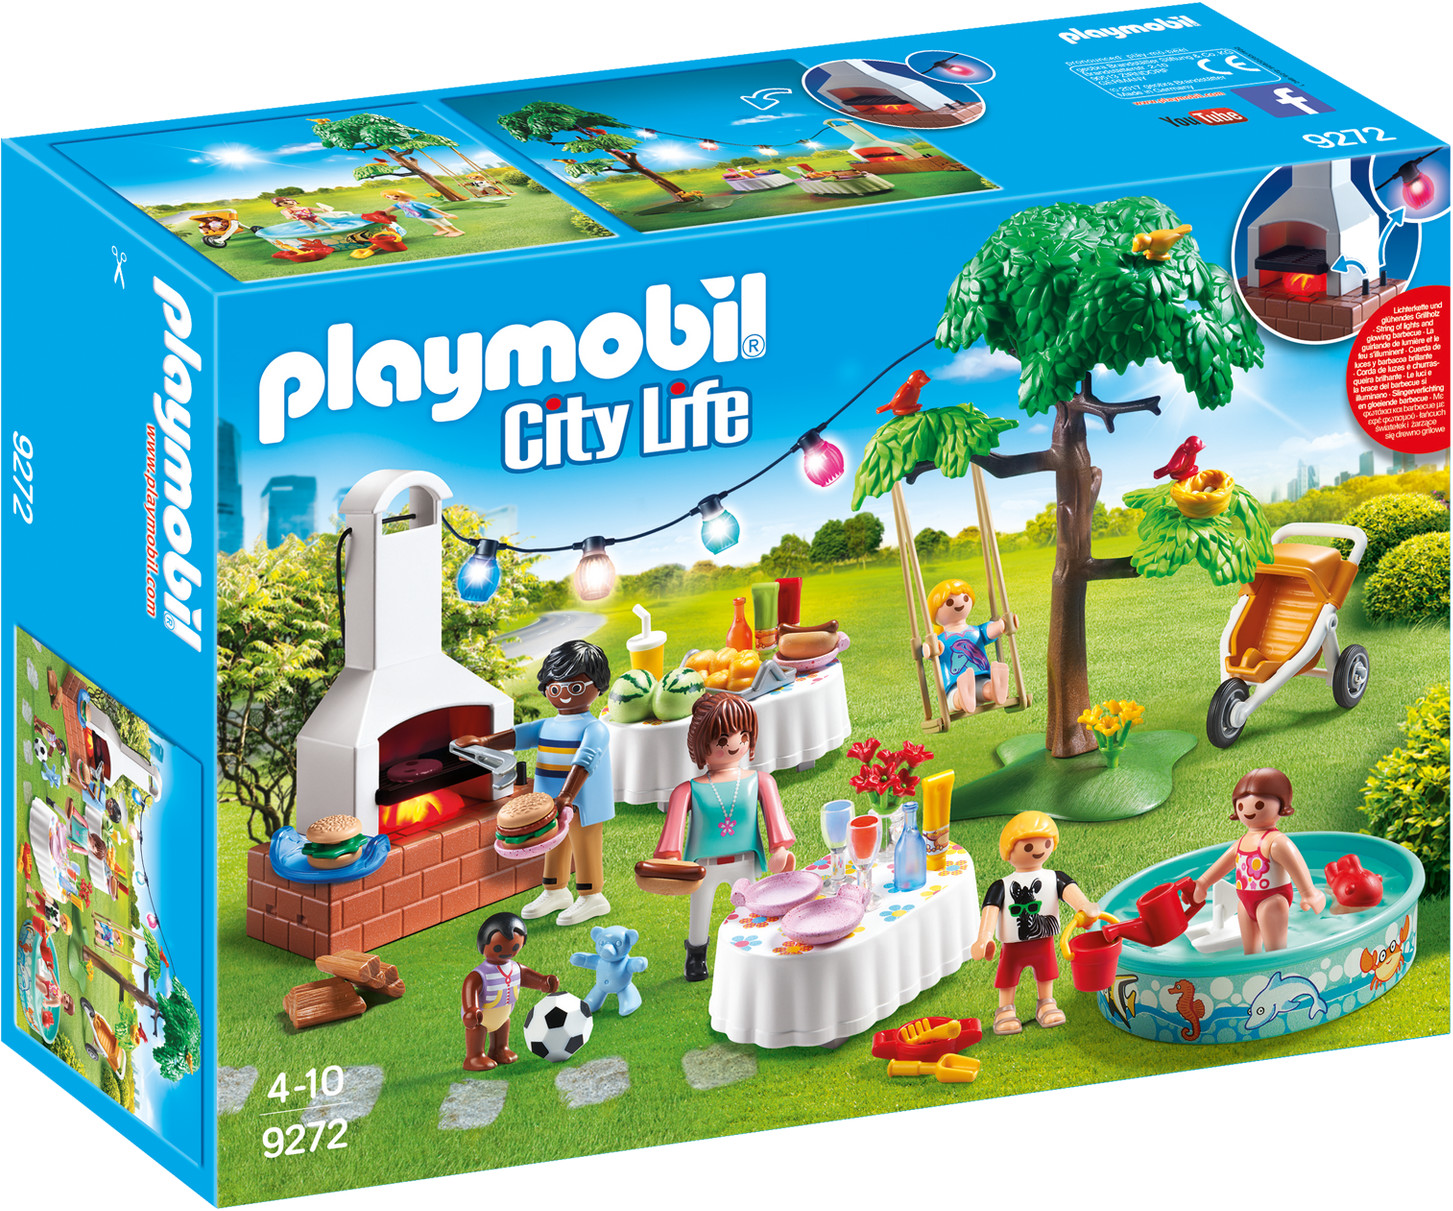 Photos - Toy Car Playmobil City Life - Housewarming Party  (9272)